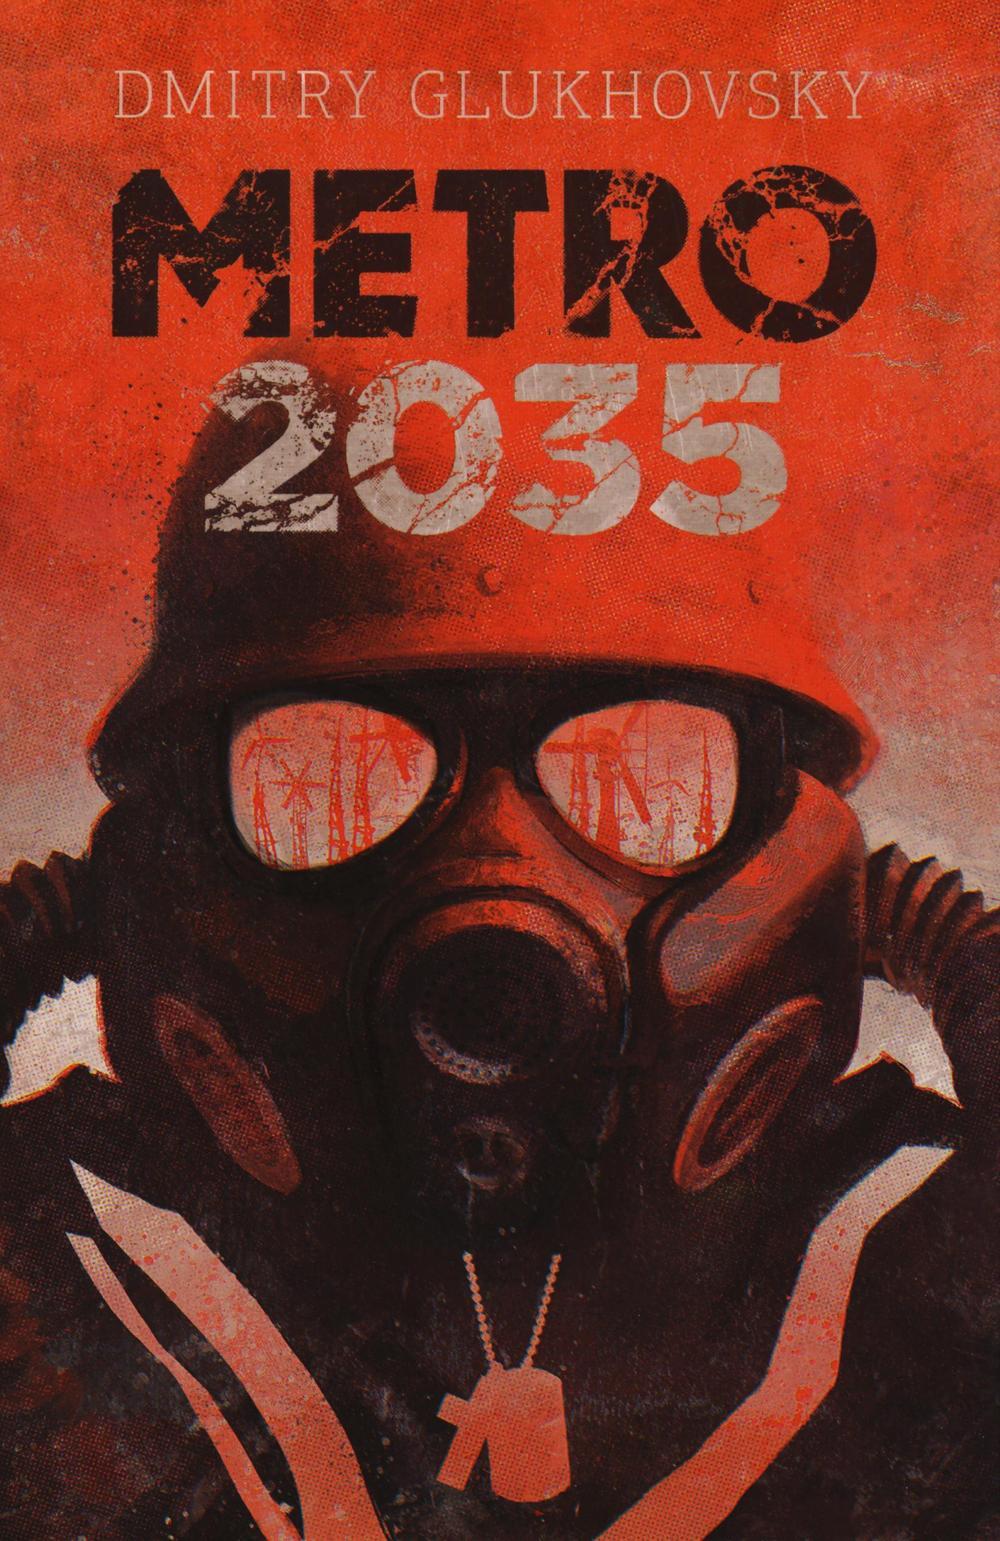 Dmitry Glukhovsky: Metro 2035 (2016, Heyne Verlag)